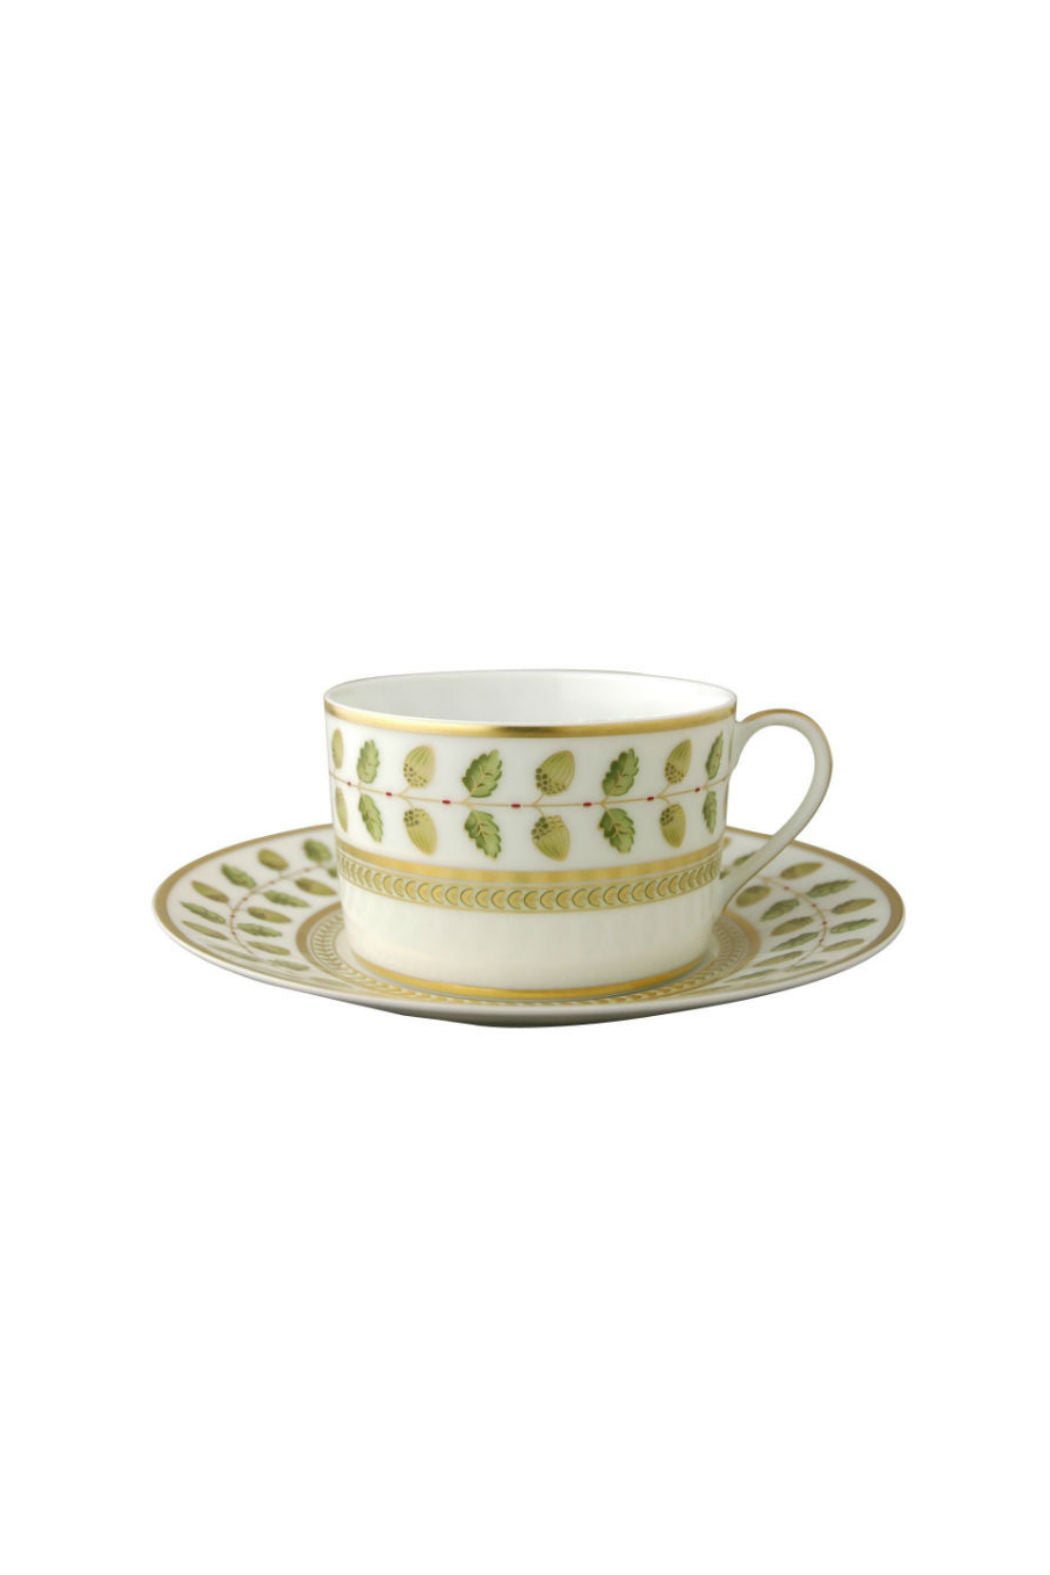 Bernardaud Constance Green Tea Cup and Saucer